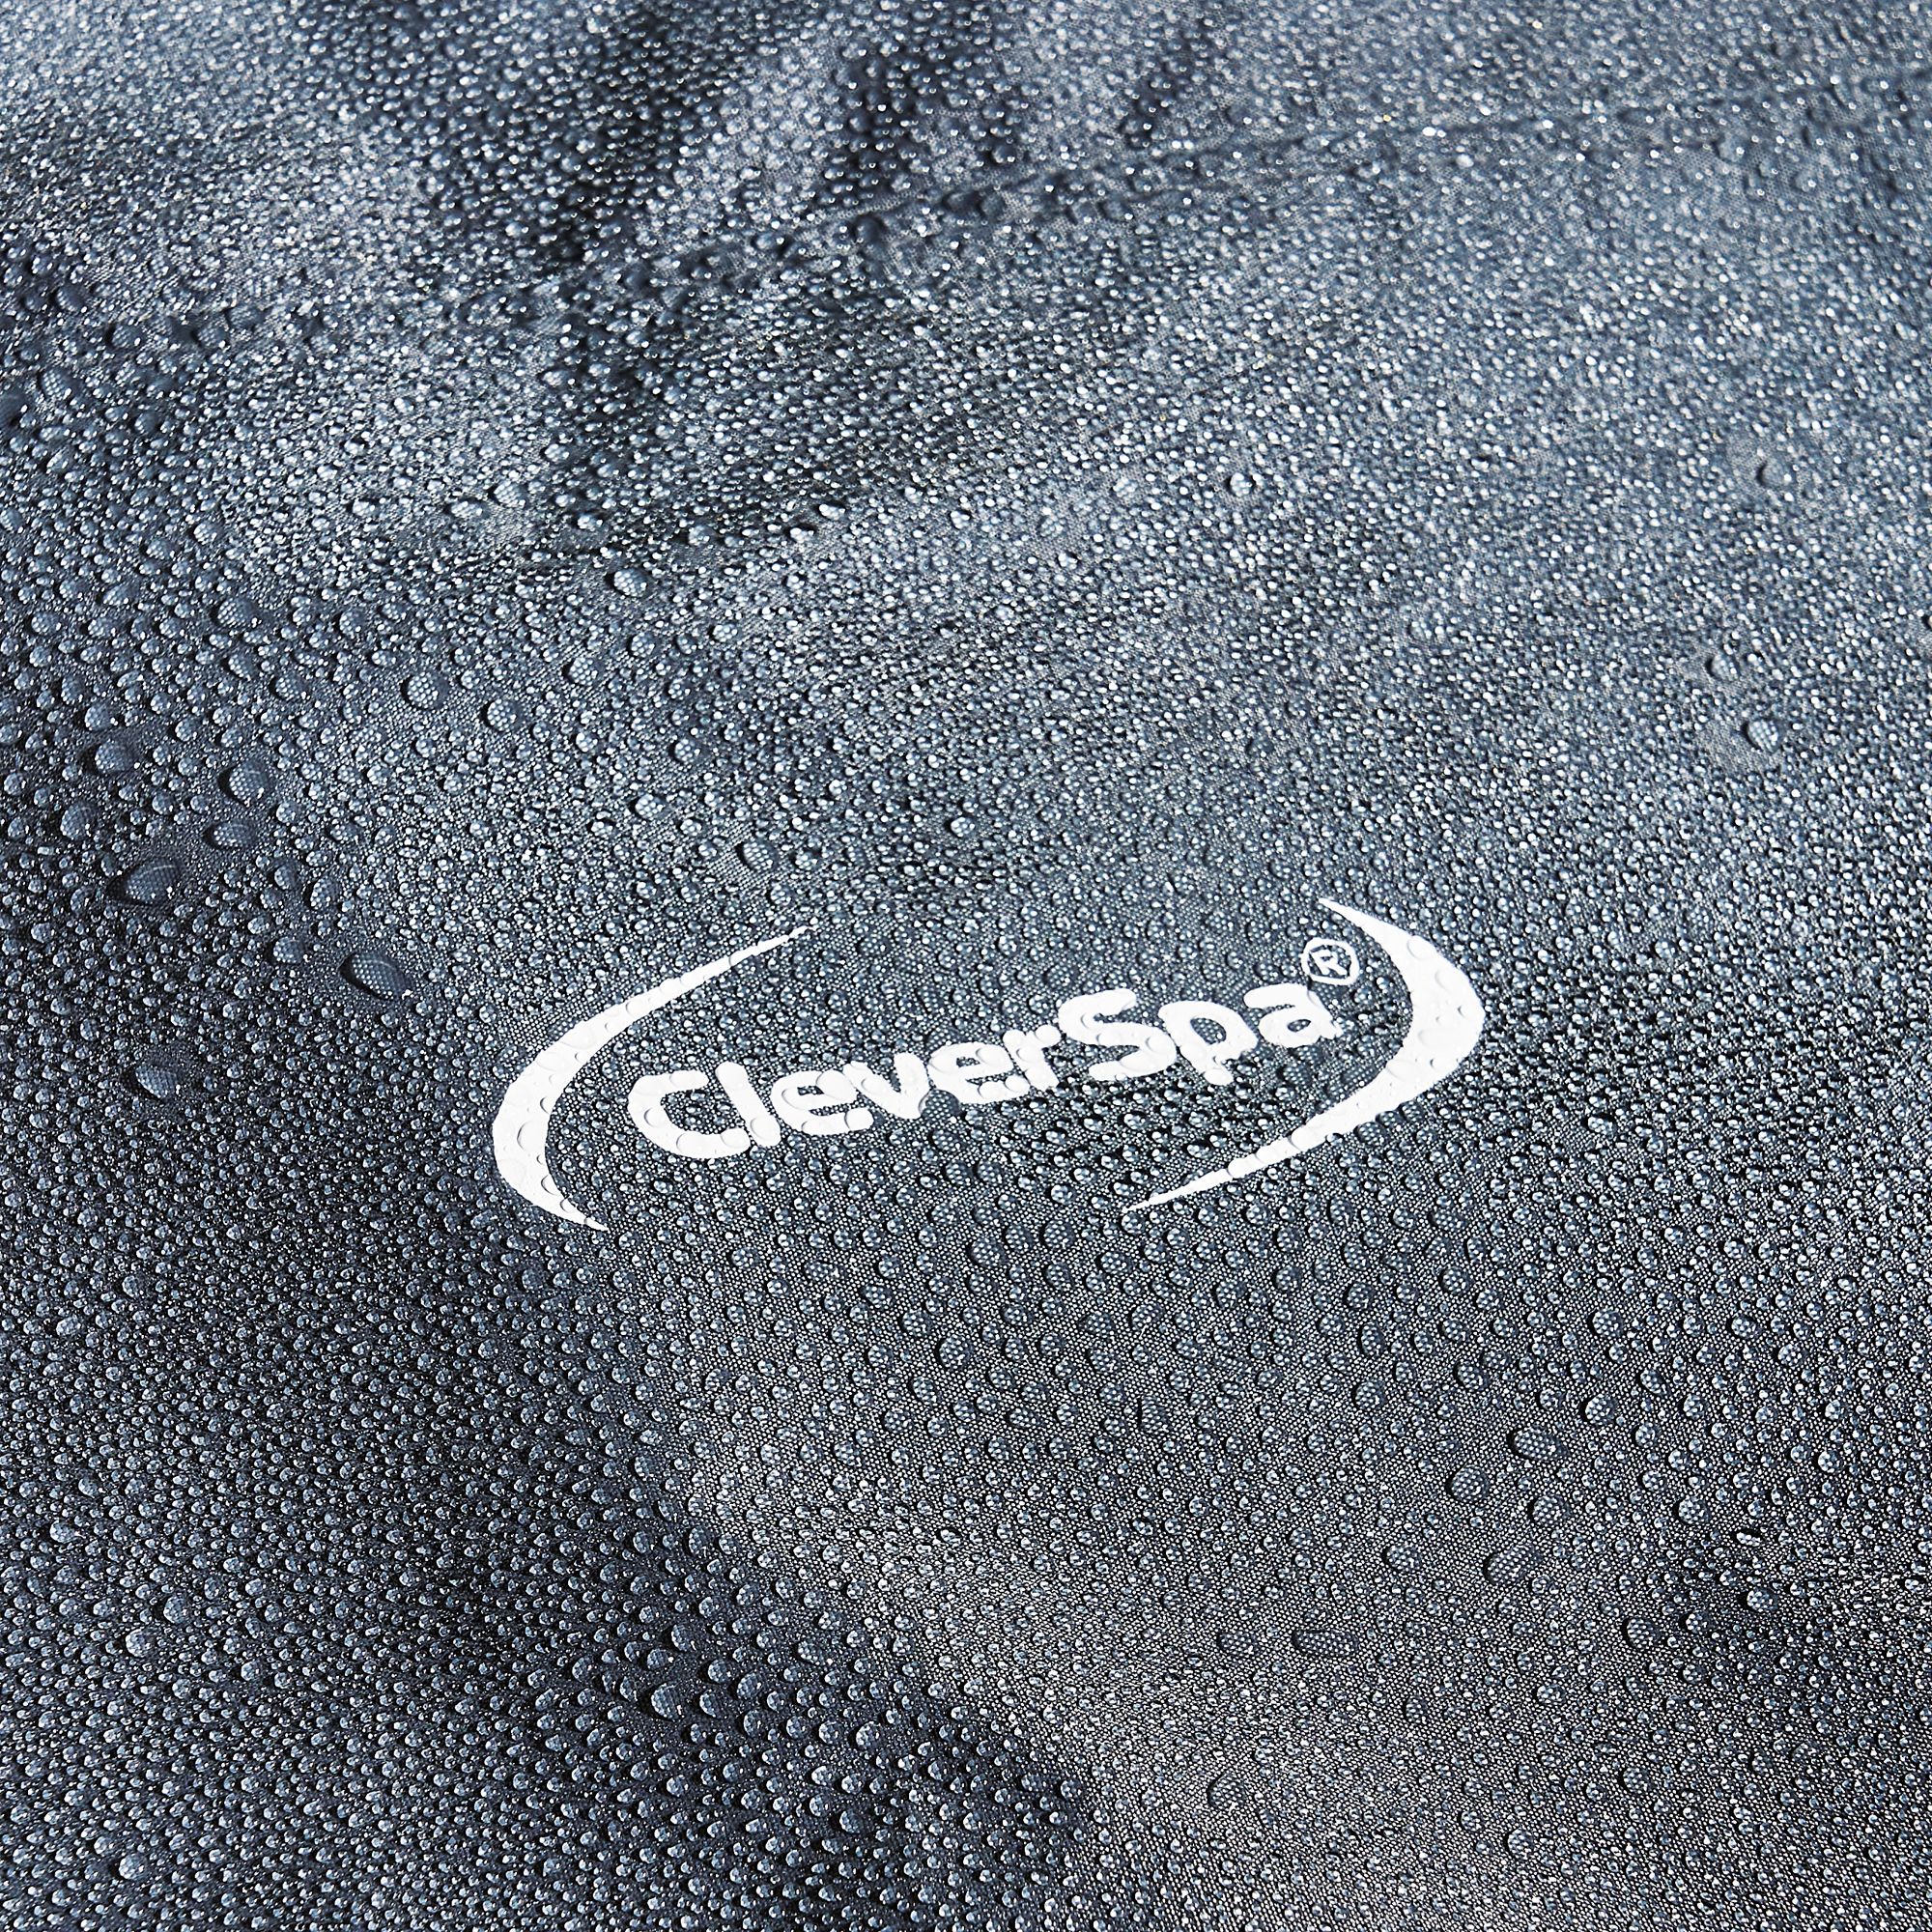 CleverSpa Grey Circular Hot tub Cover (W)185cm x (L) 185cm